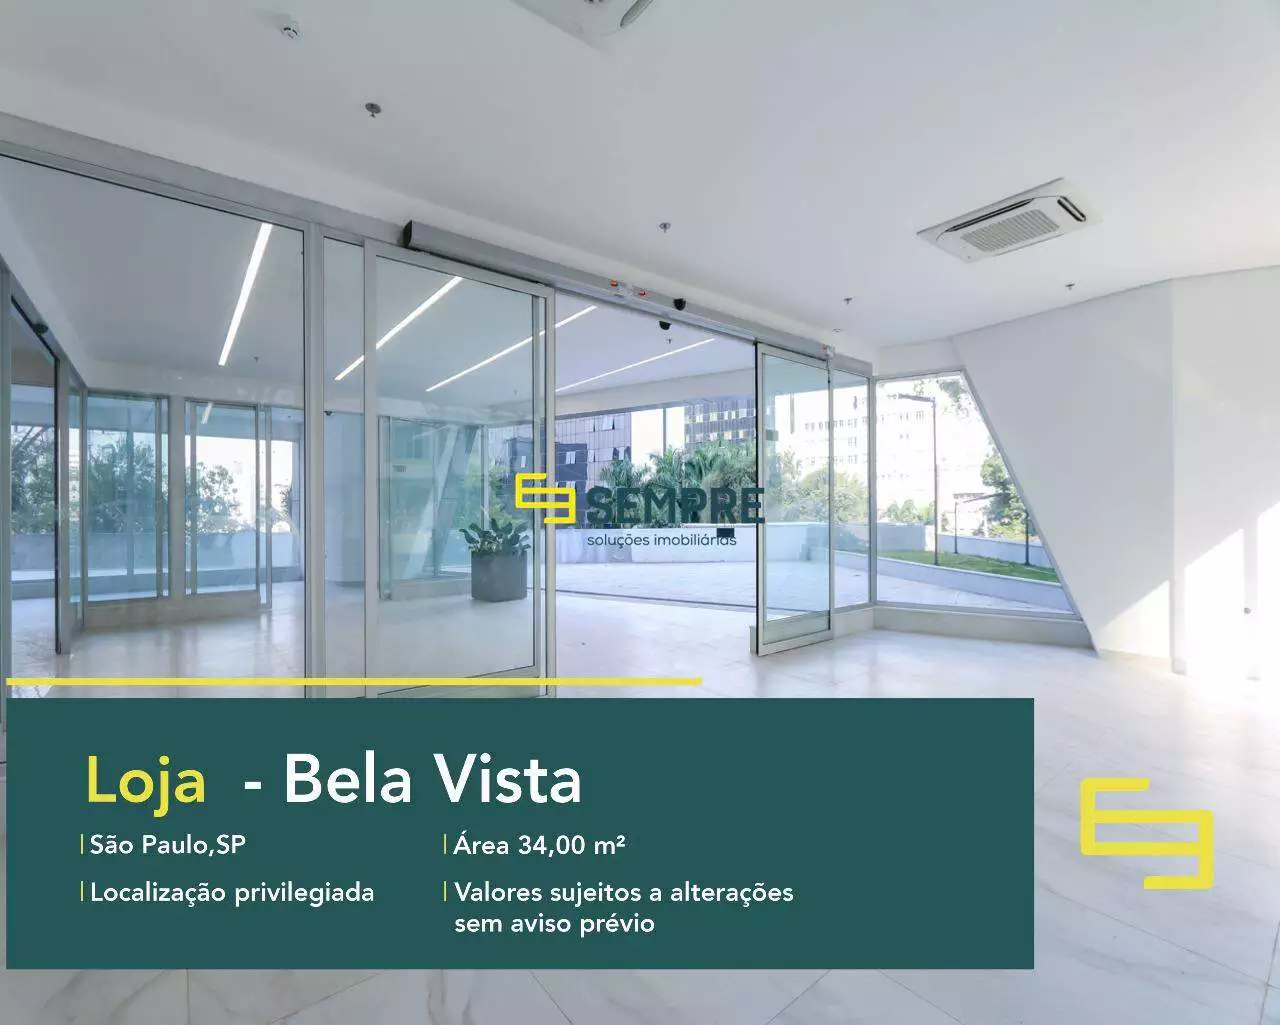 Loja no bairro Bela Vista para alugar em São Paulo - Martiniano Center, excelente localização. O ponto comercial conta com área de 34,76 m².